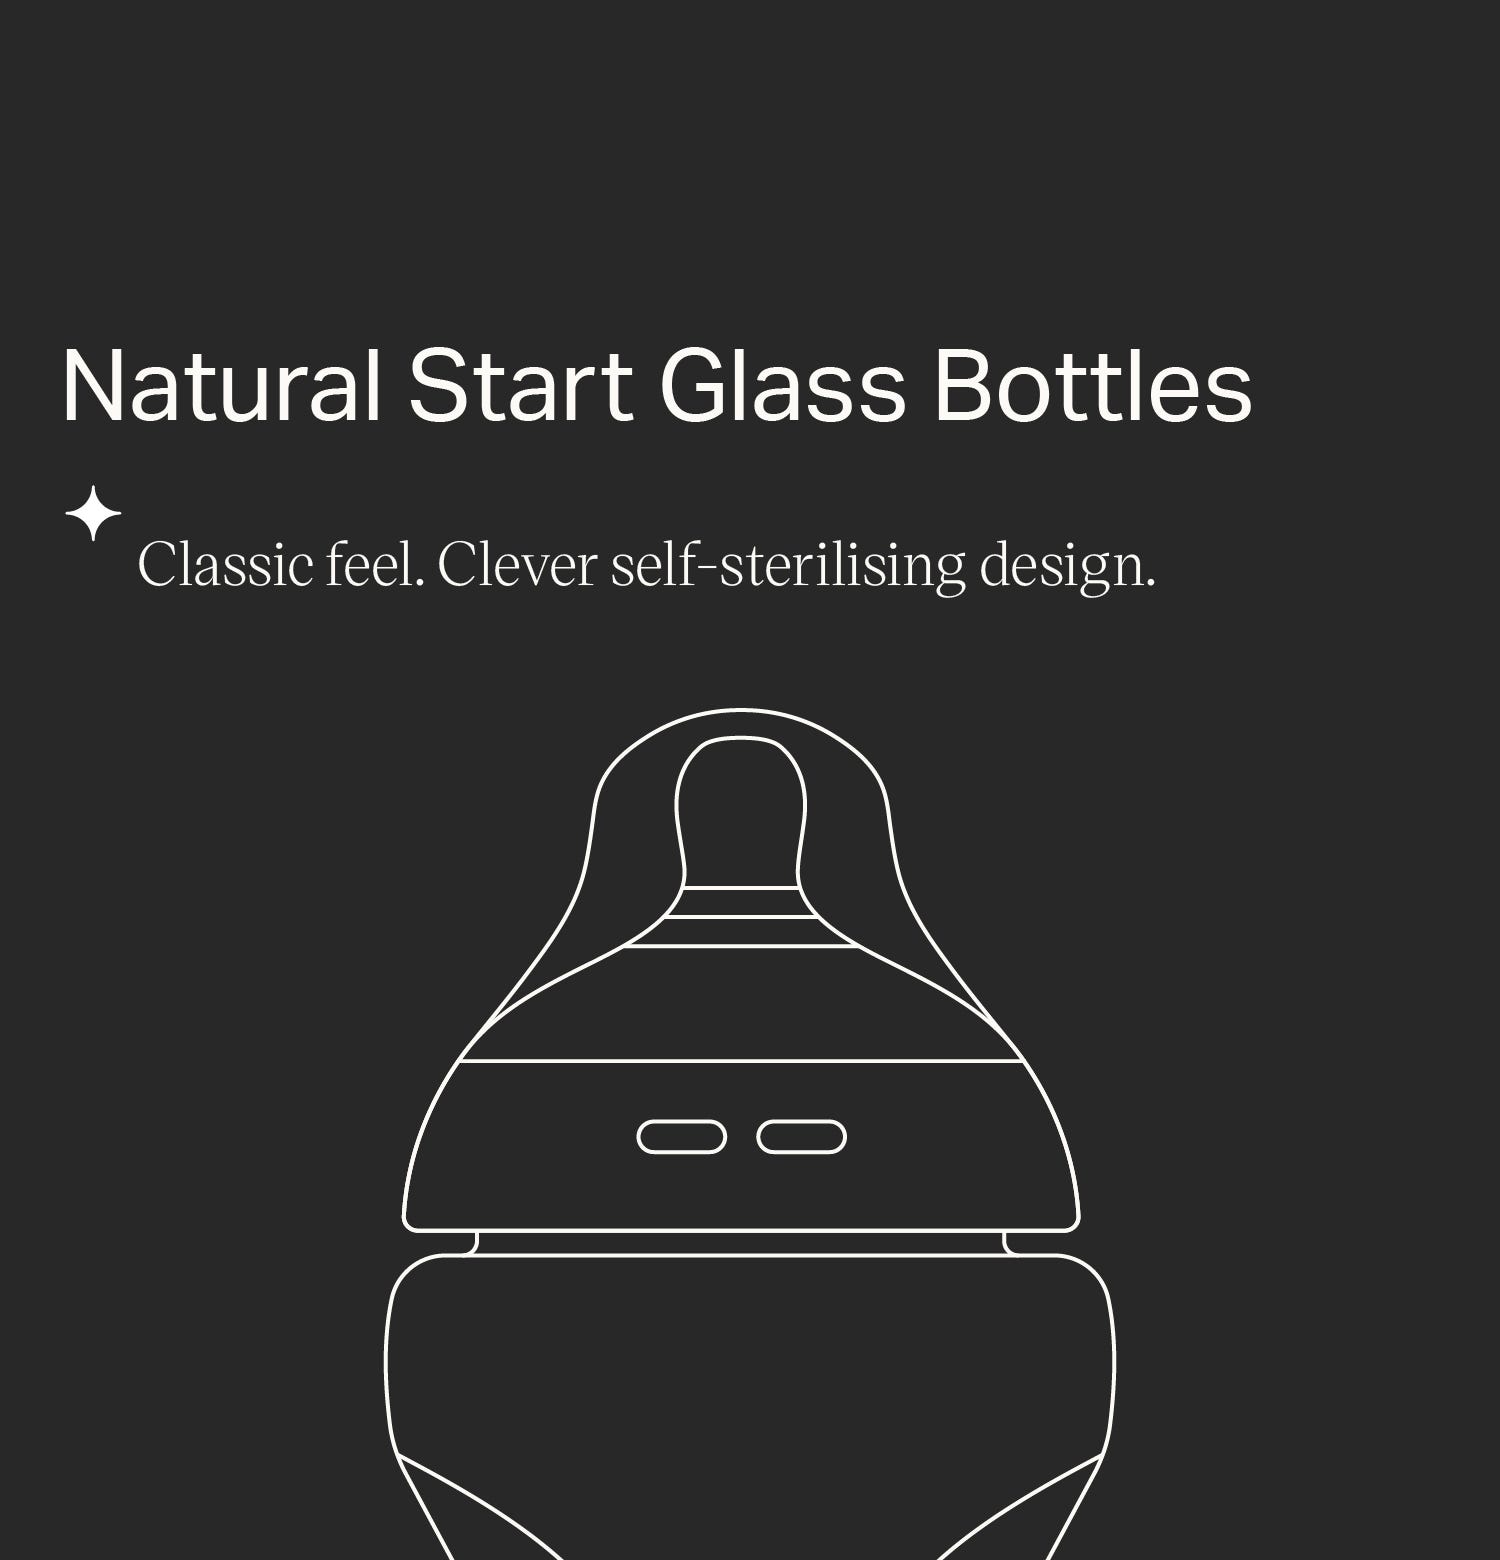 Natural Start Glass